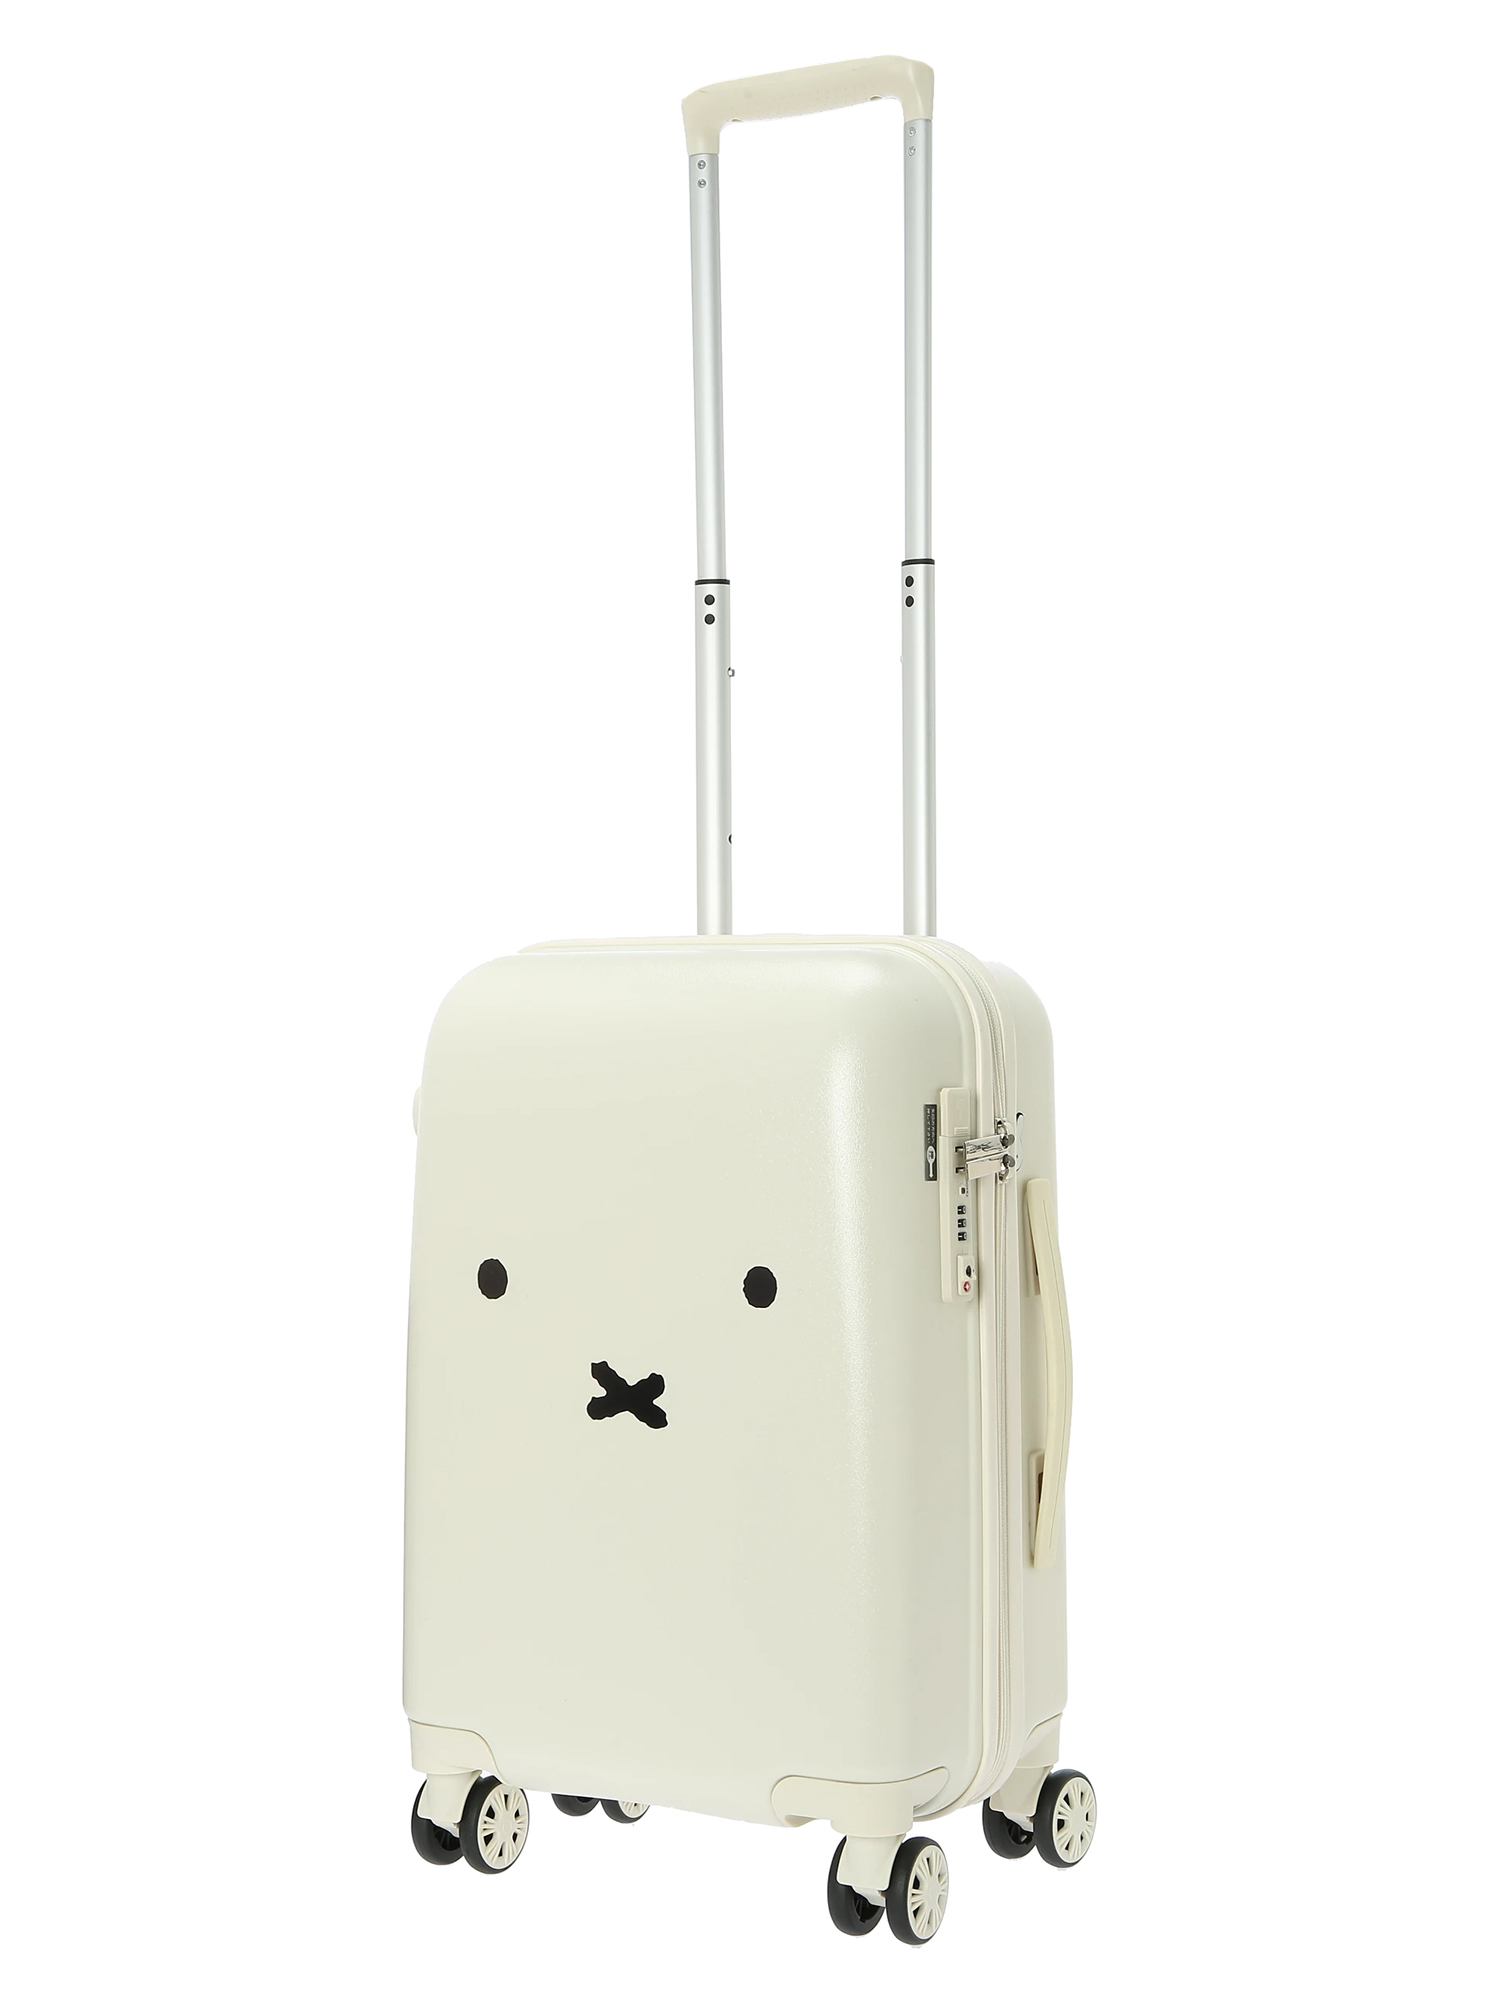 ミッフィースーツケース ホワイト / Hare no hi（ハレノヒ）のバッグ 